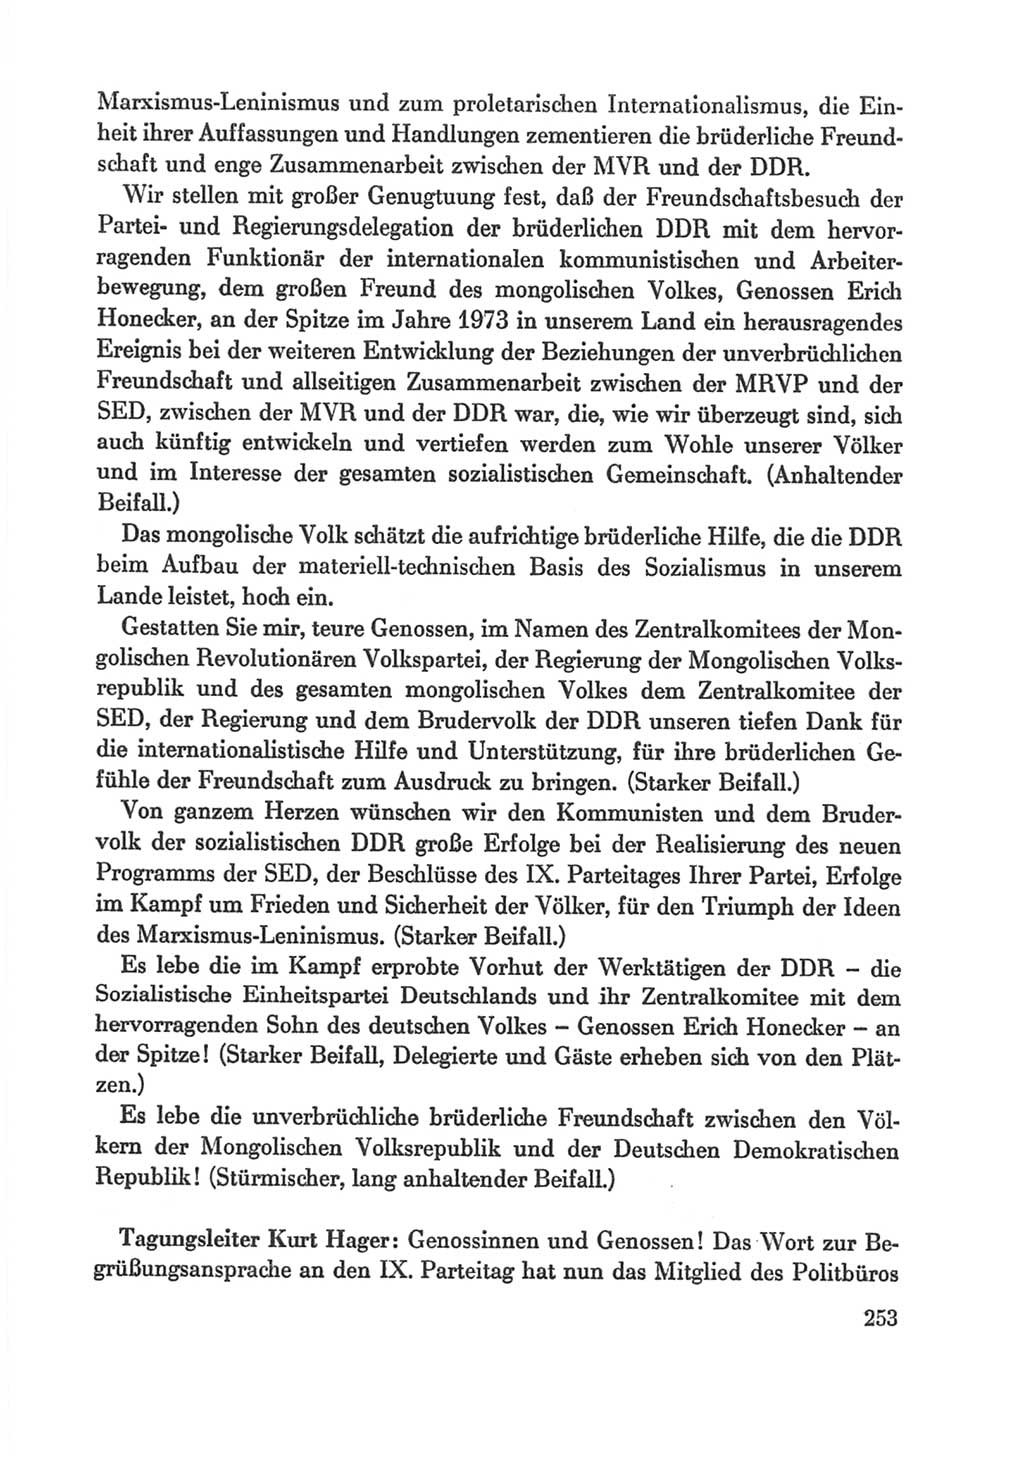 Protokoll der Verhandlungen des Ⅸ. Parteitages der Sozialistischen Einheitspartei Deutschlands (SED) [Deutsche Demokratische Republik (DDR)] 1976, Band 1, Seite 253 (Prot. Verh. Ⅸ. PT SED DDR 1976, Bd. 1, S. 253)